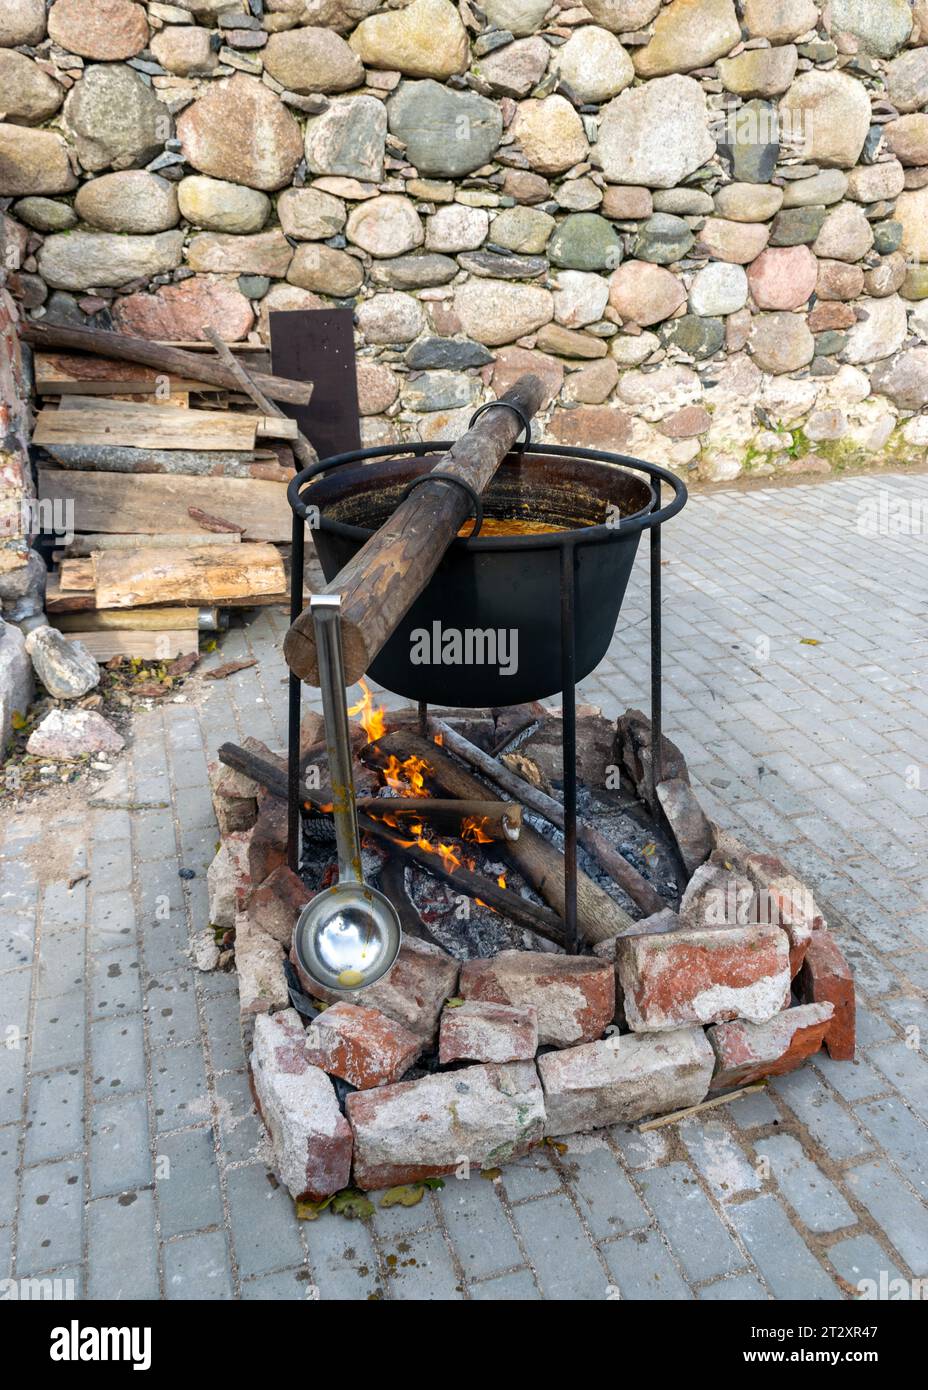 Es el momento de disfrutar de un filete de primera en una piedra caliente  en casa – FerreHogar: Tu punto de encuentro especializado para los amantes  del Outdoor.